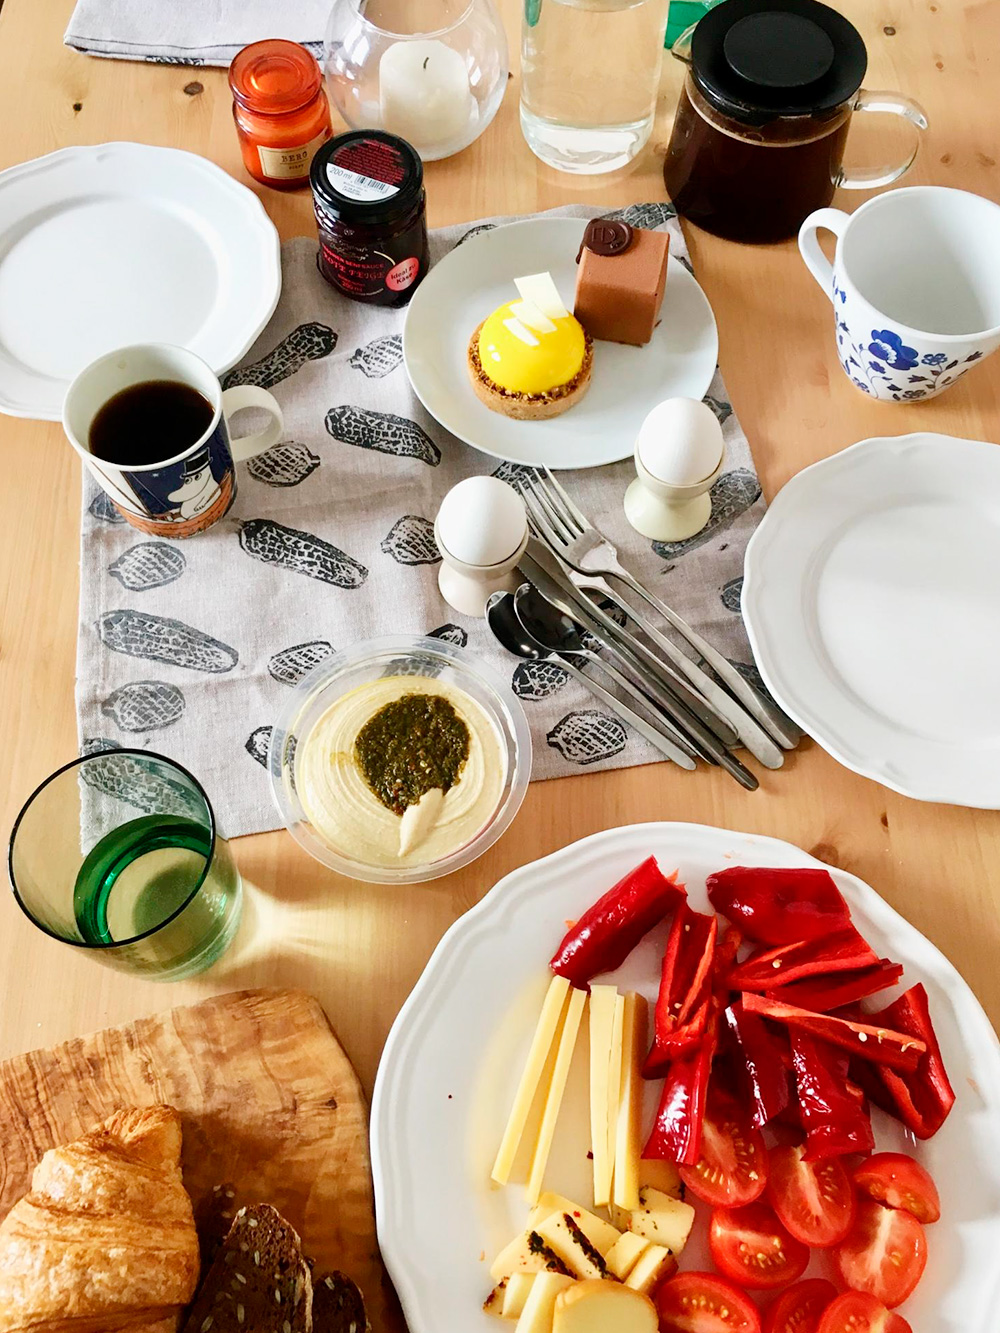 В присутствии бойфренда культура завтраков в доме сильно повышается